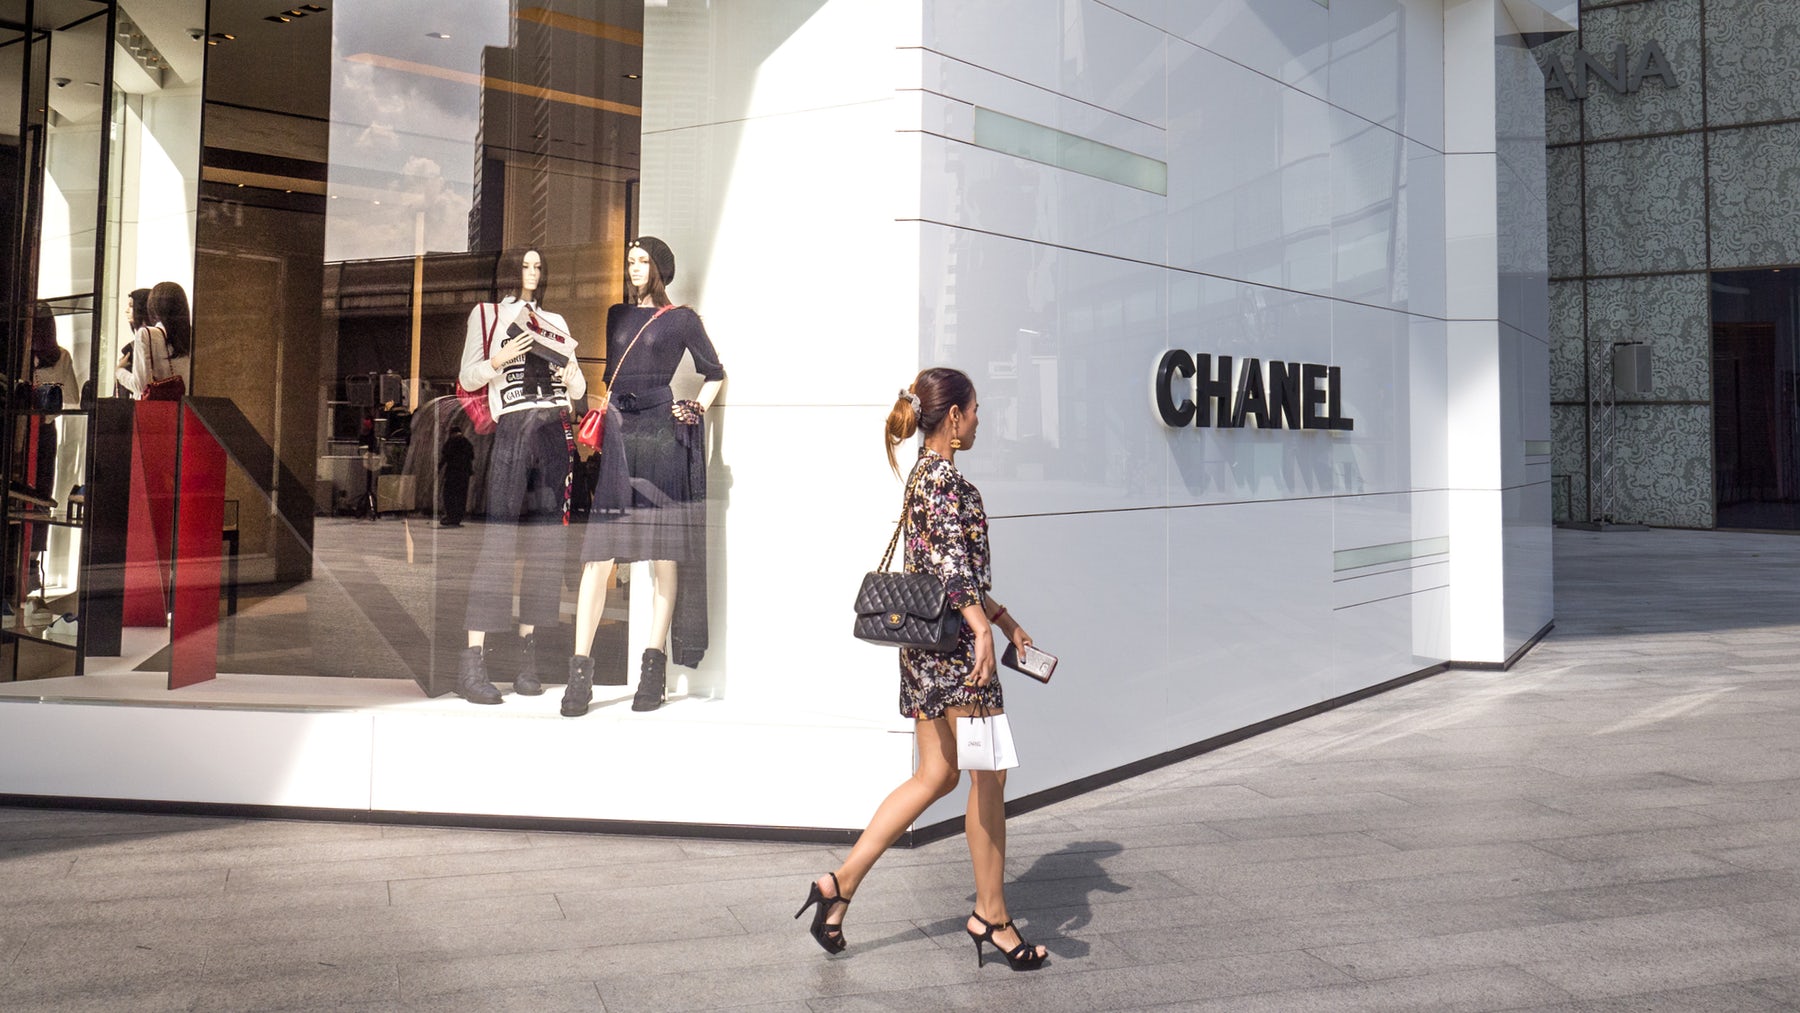 Hàn Quốc là quốc gia có đồ Chanel đắt nhất châu Á. Đây cũng là quốc gia tiêu thụ Chanel hàng đầu.